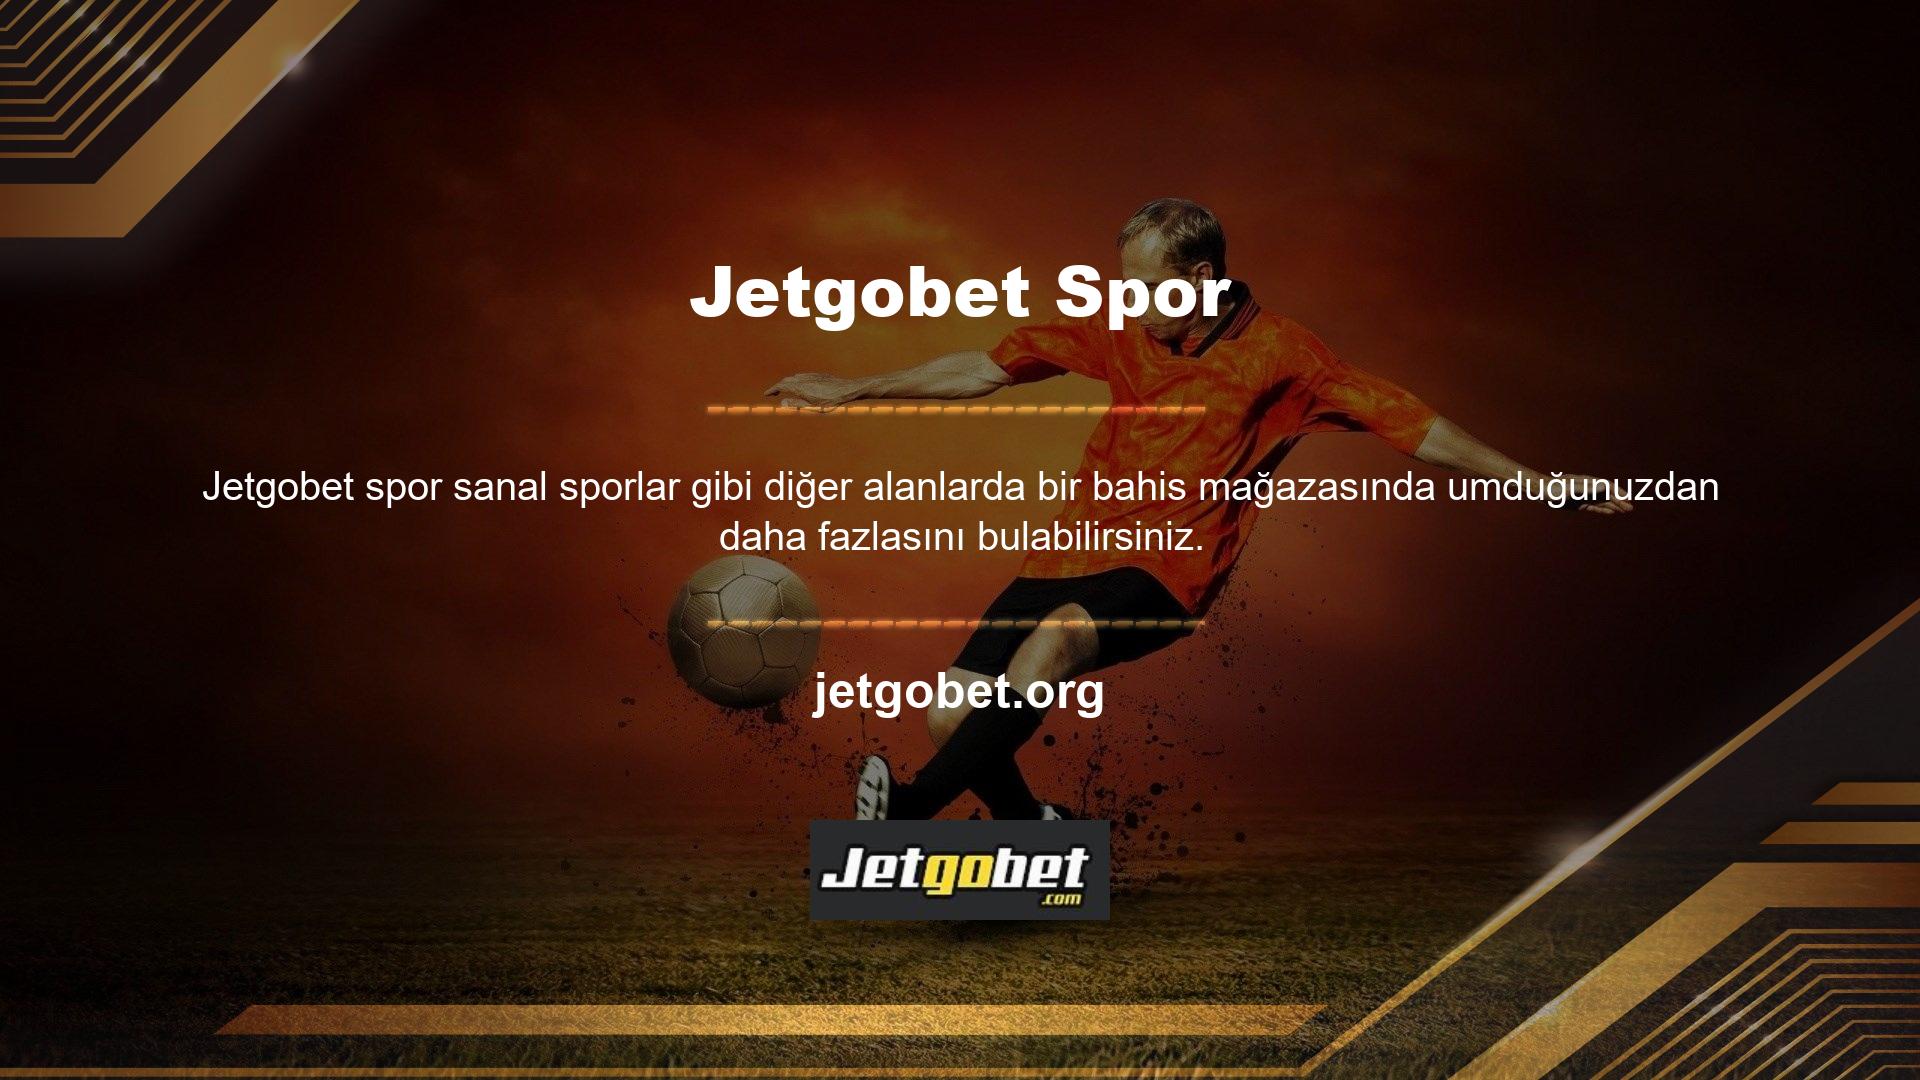 Tüm detayları kendiniz görmek isterseniz lütfen yukarıdaki Jetgobet giriş URL'sine bakın